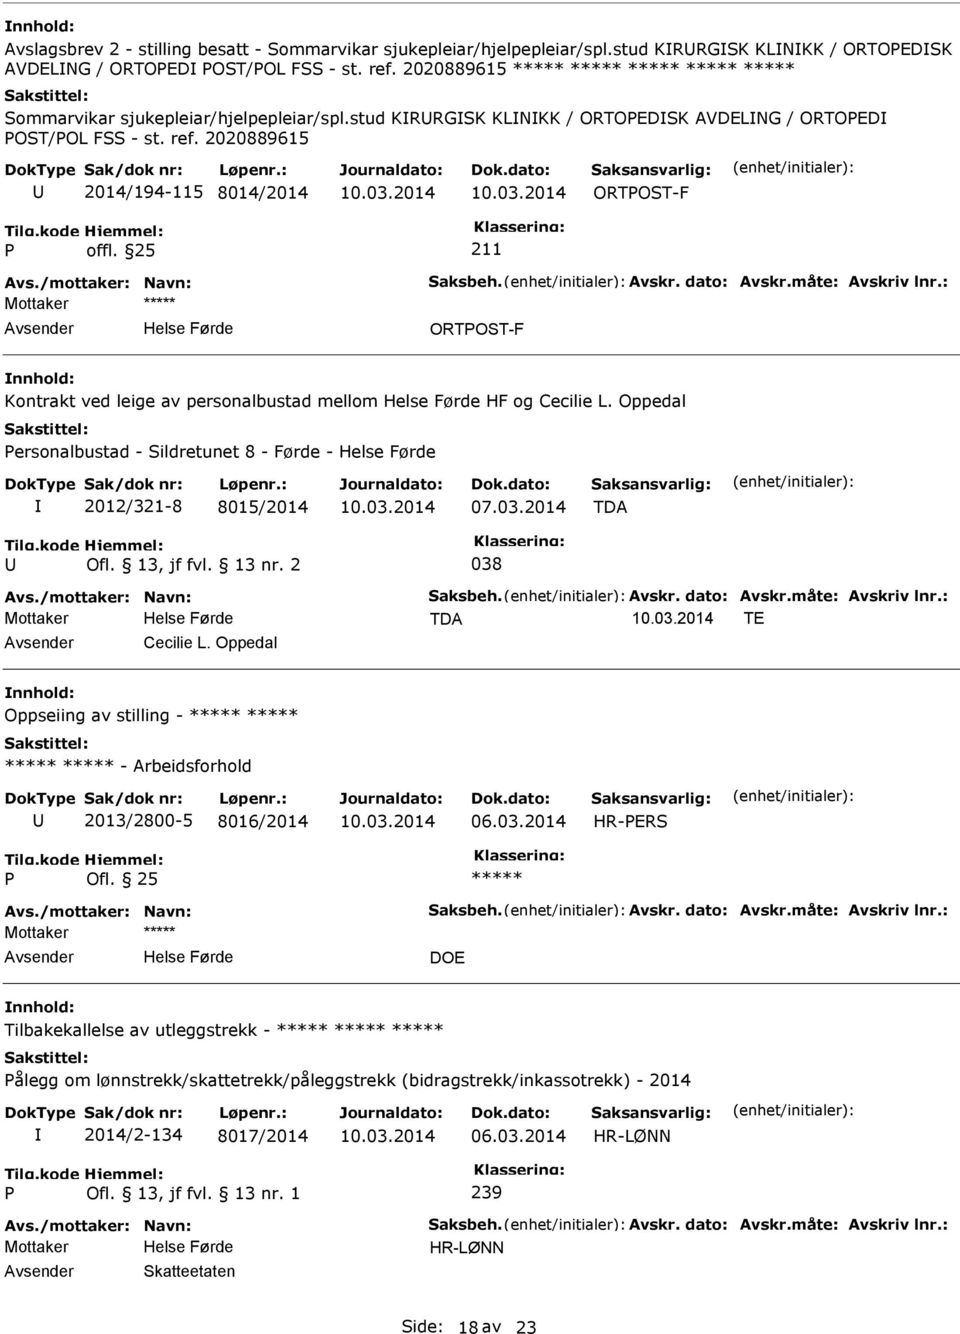 : Mottaker ORTOST-F Kontrakt ved leige av personalbustad mellom HF og Cecilie L. Oppedal ersonalbustad - Sildretunet 8 - Førde - 2012/321-8 8015/2014 TDA Ofl. 13, jf fvl. 13 nr. 2 038 Avs.